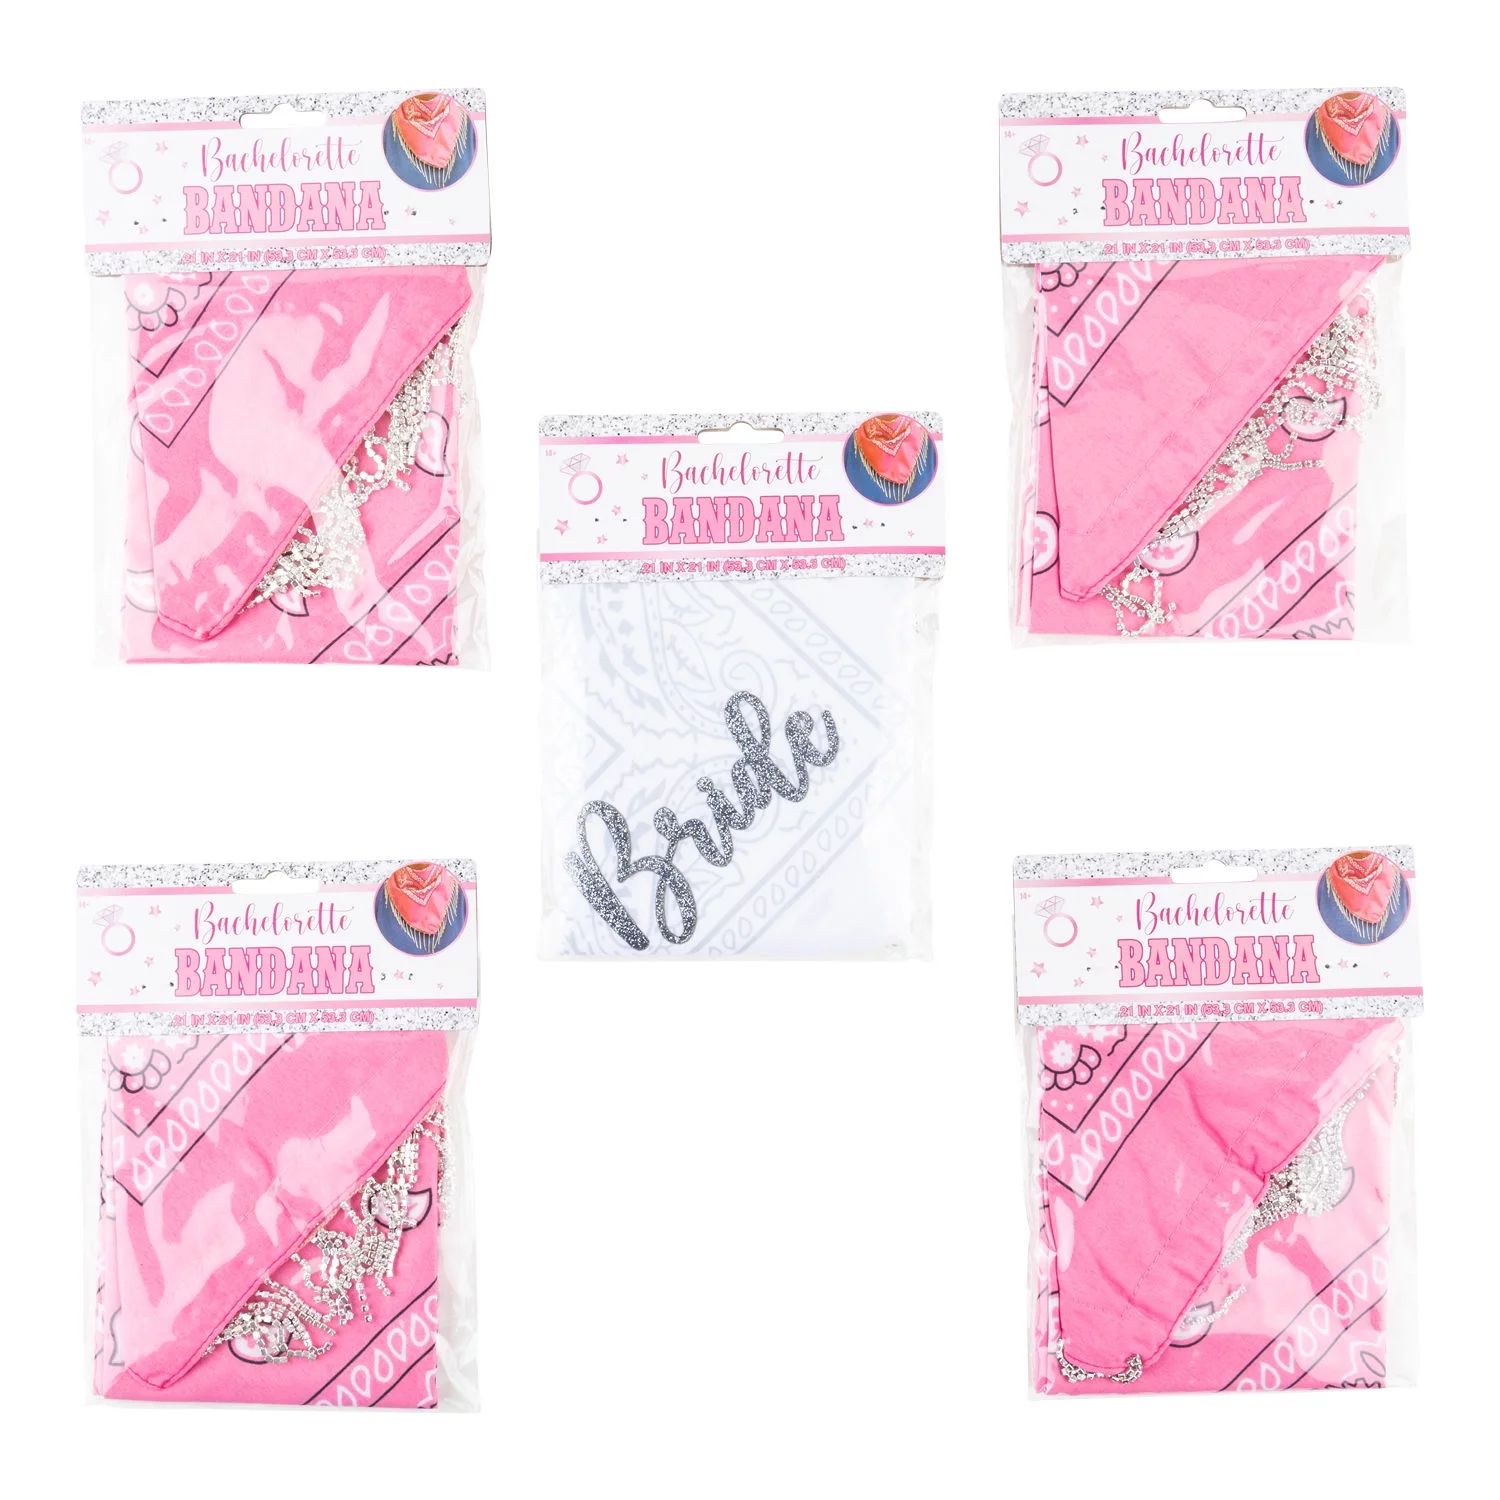 Bachelorette Fringe Bandana, 5PK with one white and four pink rhinestone bandanas | Walmart (US)